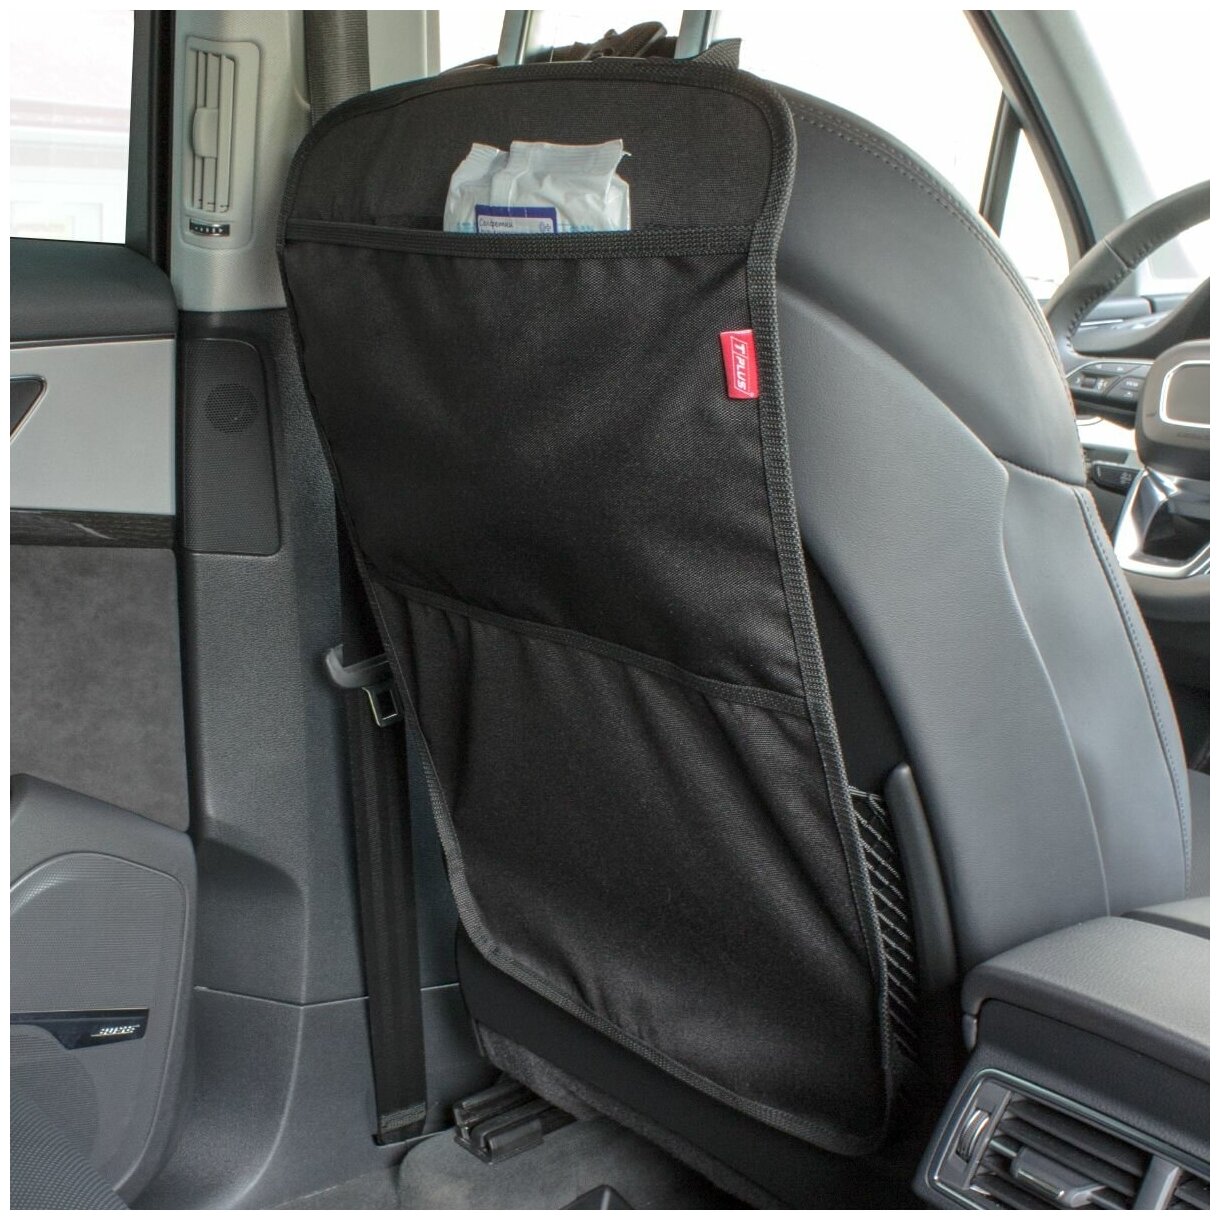 Органайзер на спинку сиденья автомобиля с 1 карманом, накидка на сидение для хранения вещей, подвесной автоорганайзер (оксфорд 240, черный), Tplus